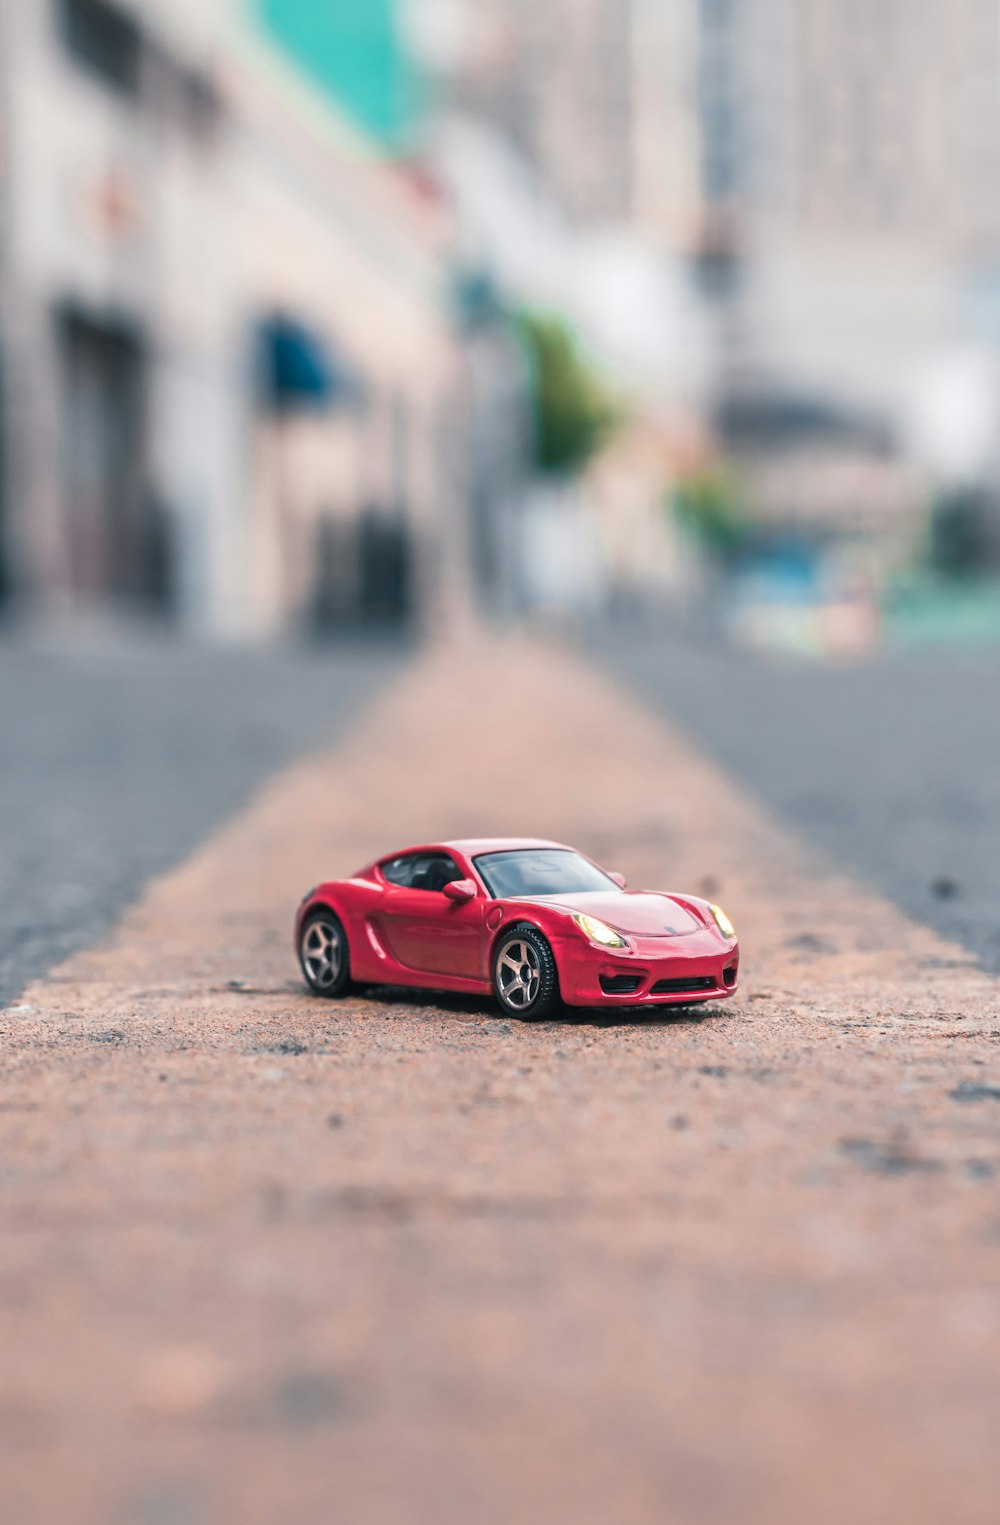 Fotografía de enfoque selectivo del modelo a escala de cupé rojo en la carretera